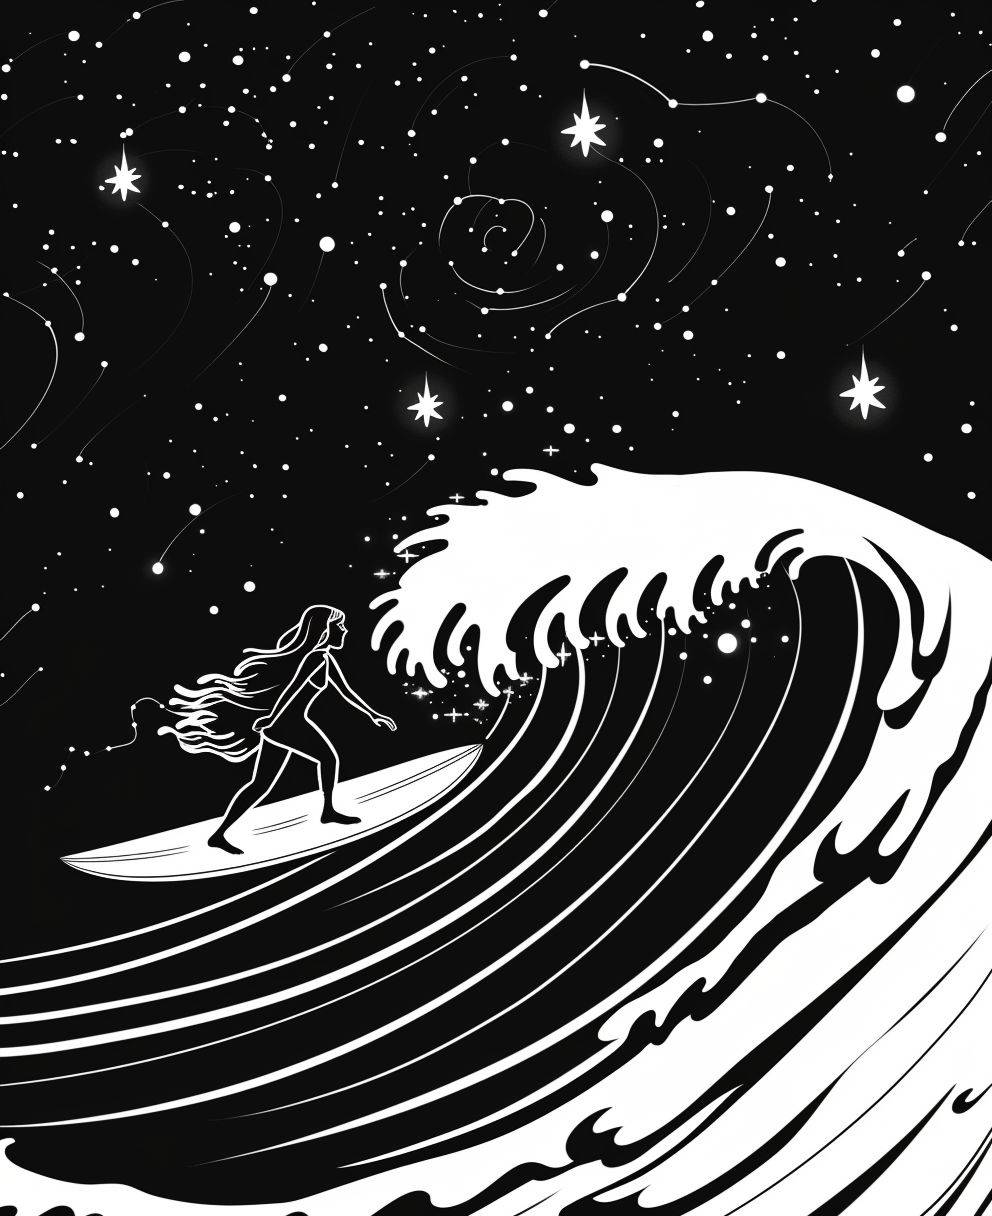 サーフボードに乗る女の子を描いたイラスト。超現実的な波、背景には輝く星があり、漫画風。太い線、細部は少なく、シェーディングやカラーはなし